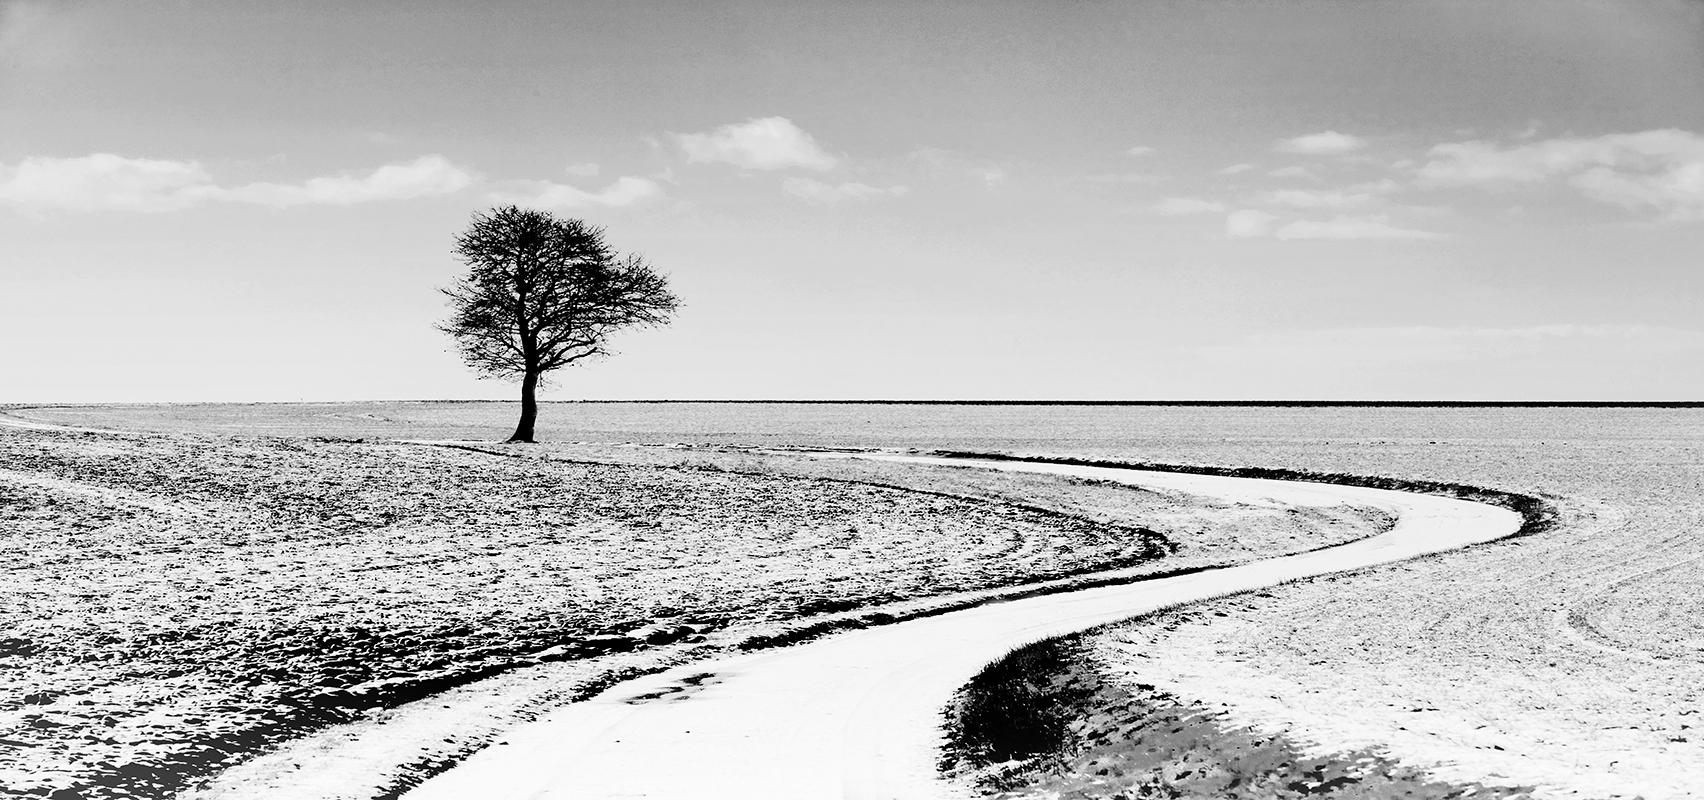 Sam Thomas Landscape Photograph – Quiet- Signierter Kunstdruck in limitierter Auflage, Contemporary schwarz-weiß